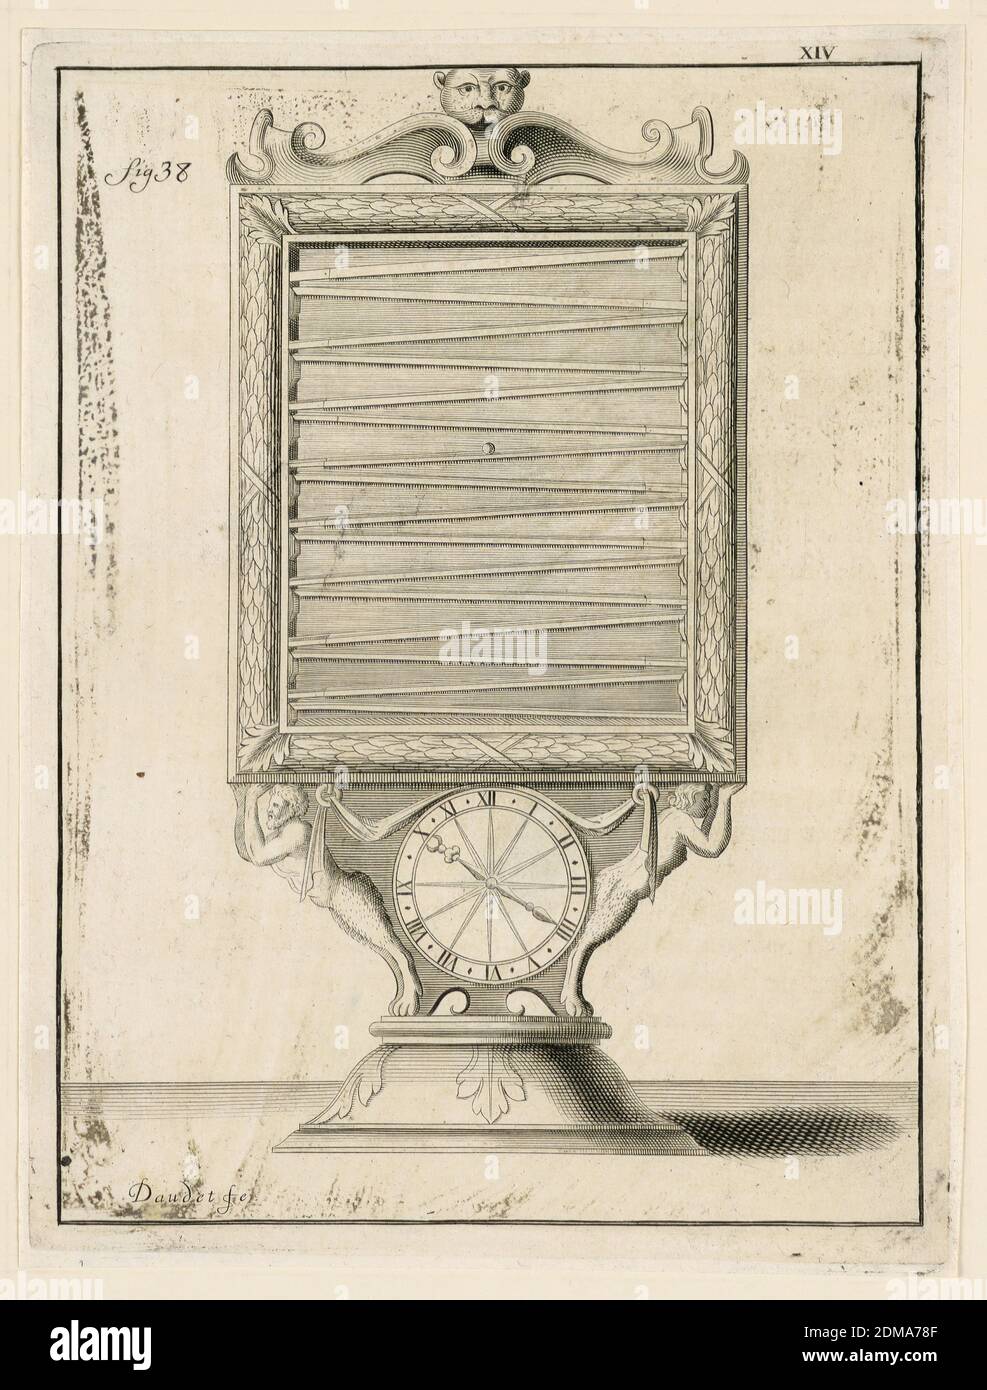 Design For a Clock, pl. XIV from 'Recueil d'Ouvrages Curieux de Mathematique et de Mecanique, ou Description du Cabinet', Gaspard Grollier de Seviere II, French, 1677 - 1745, Engraving on paper, France, 1719, Print Stock Photo